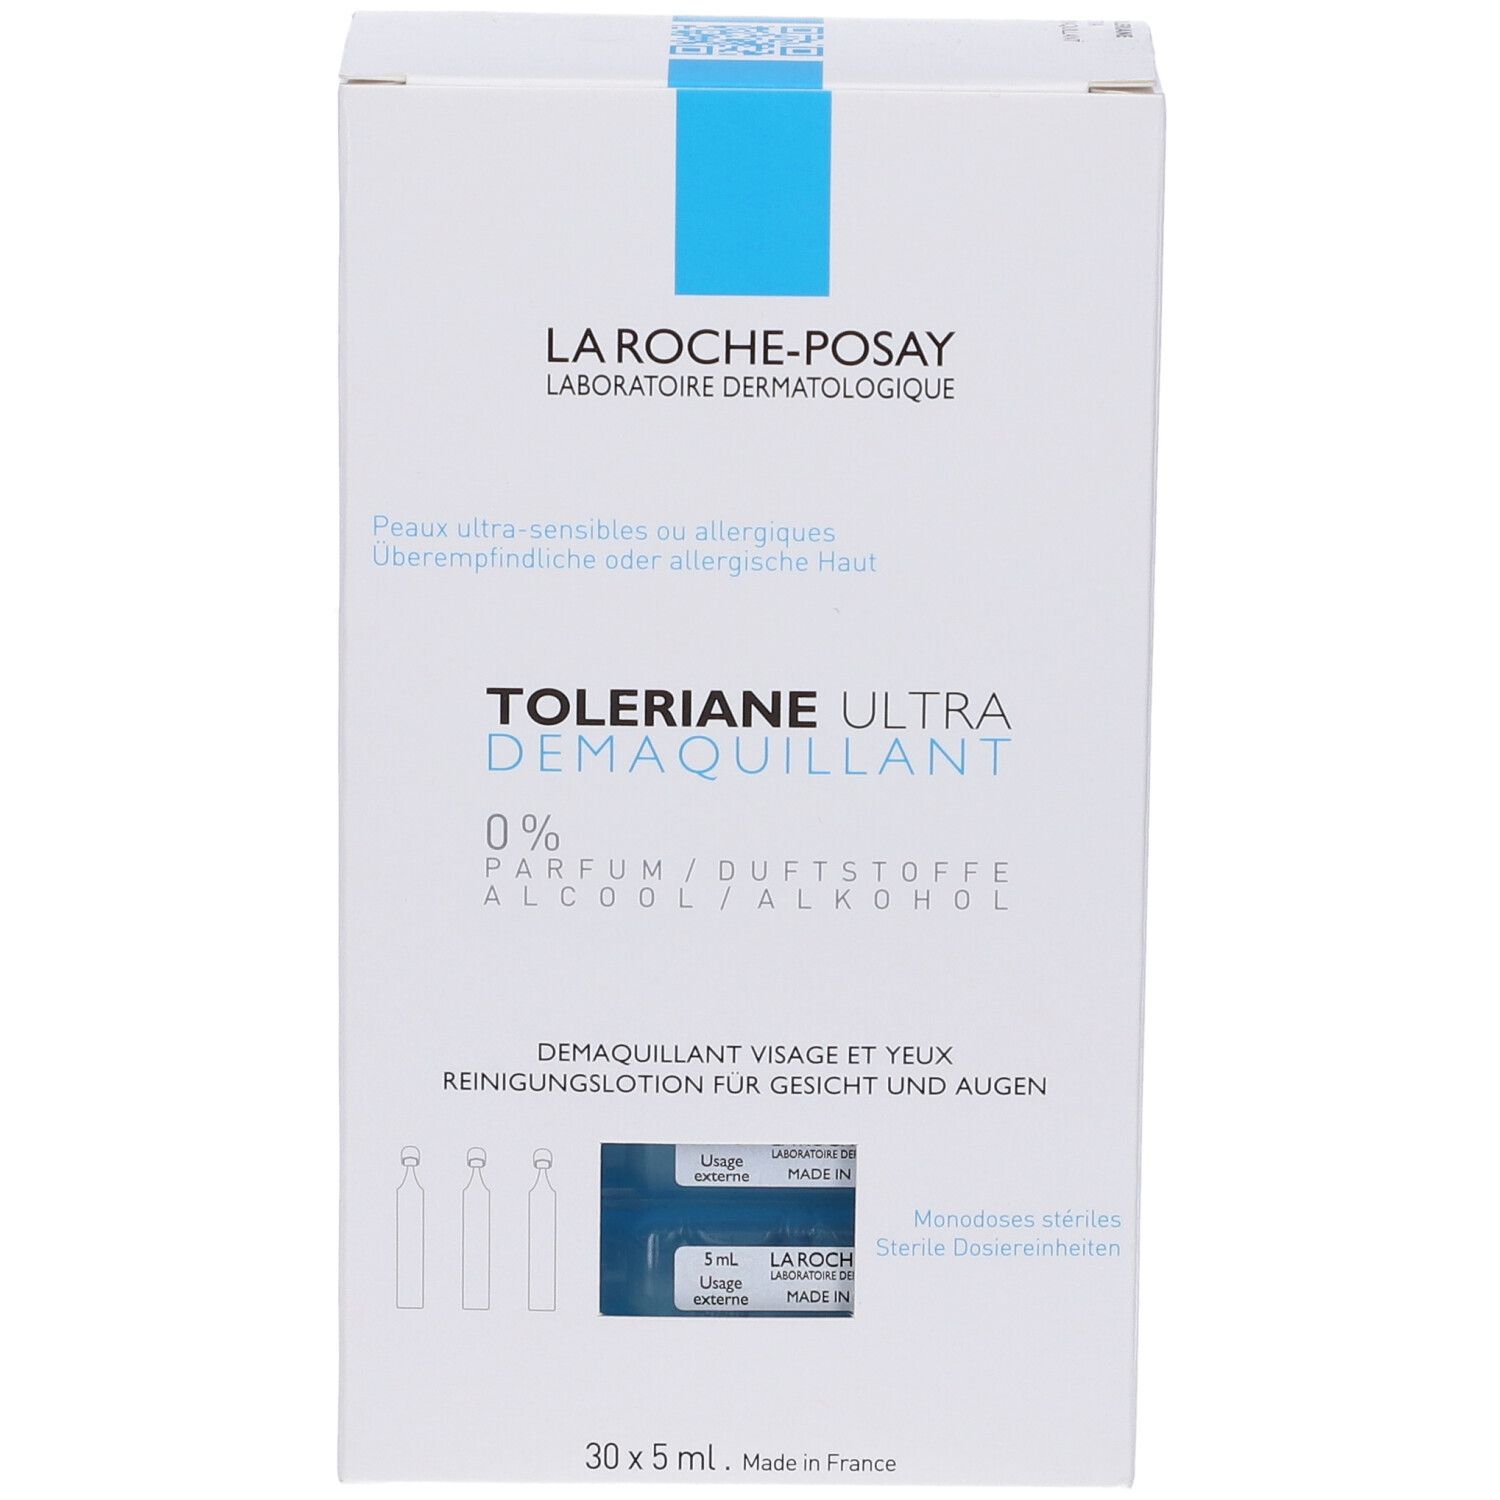 La Roche-Posay Toleriane Ultra Struccante Purificante 30 X 5 ml